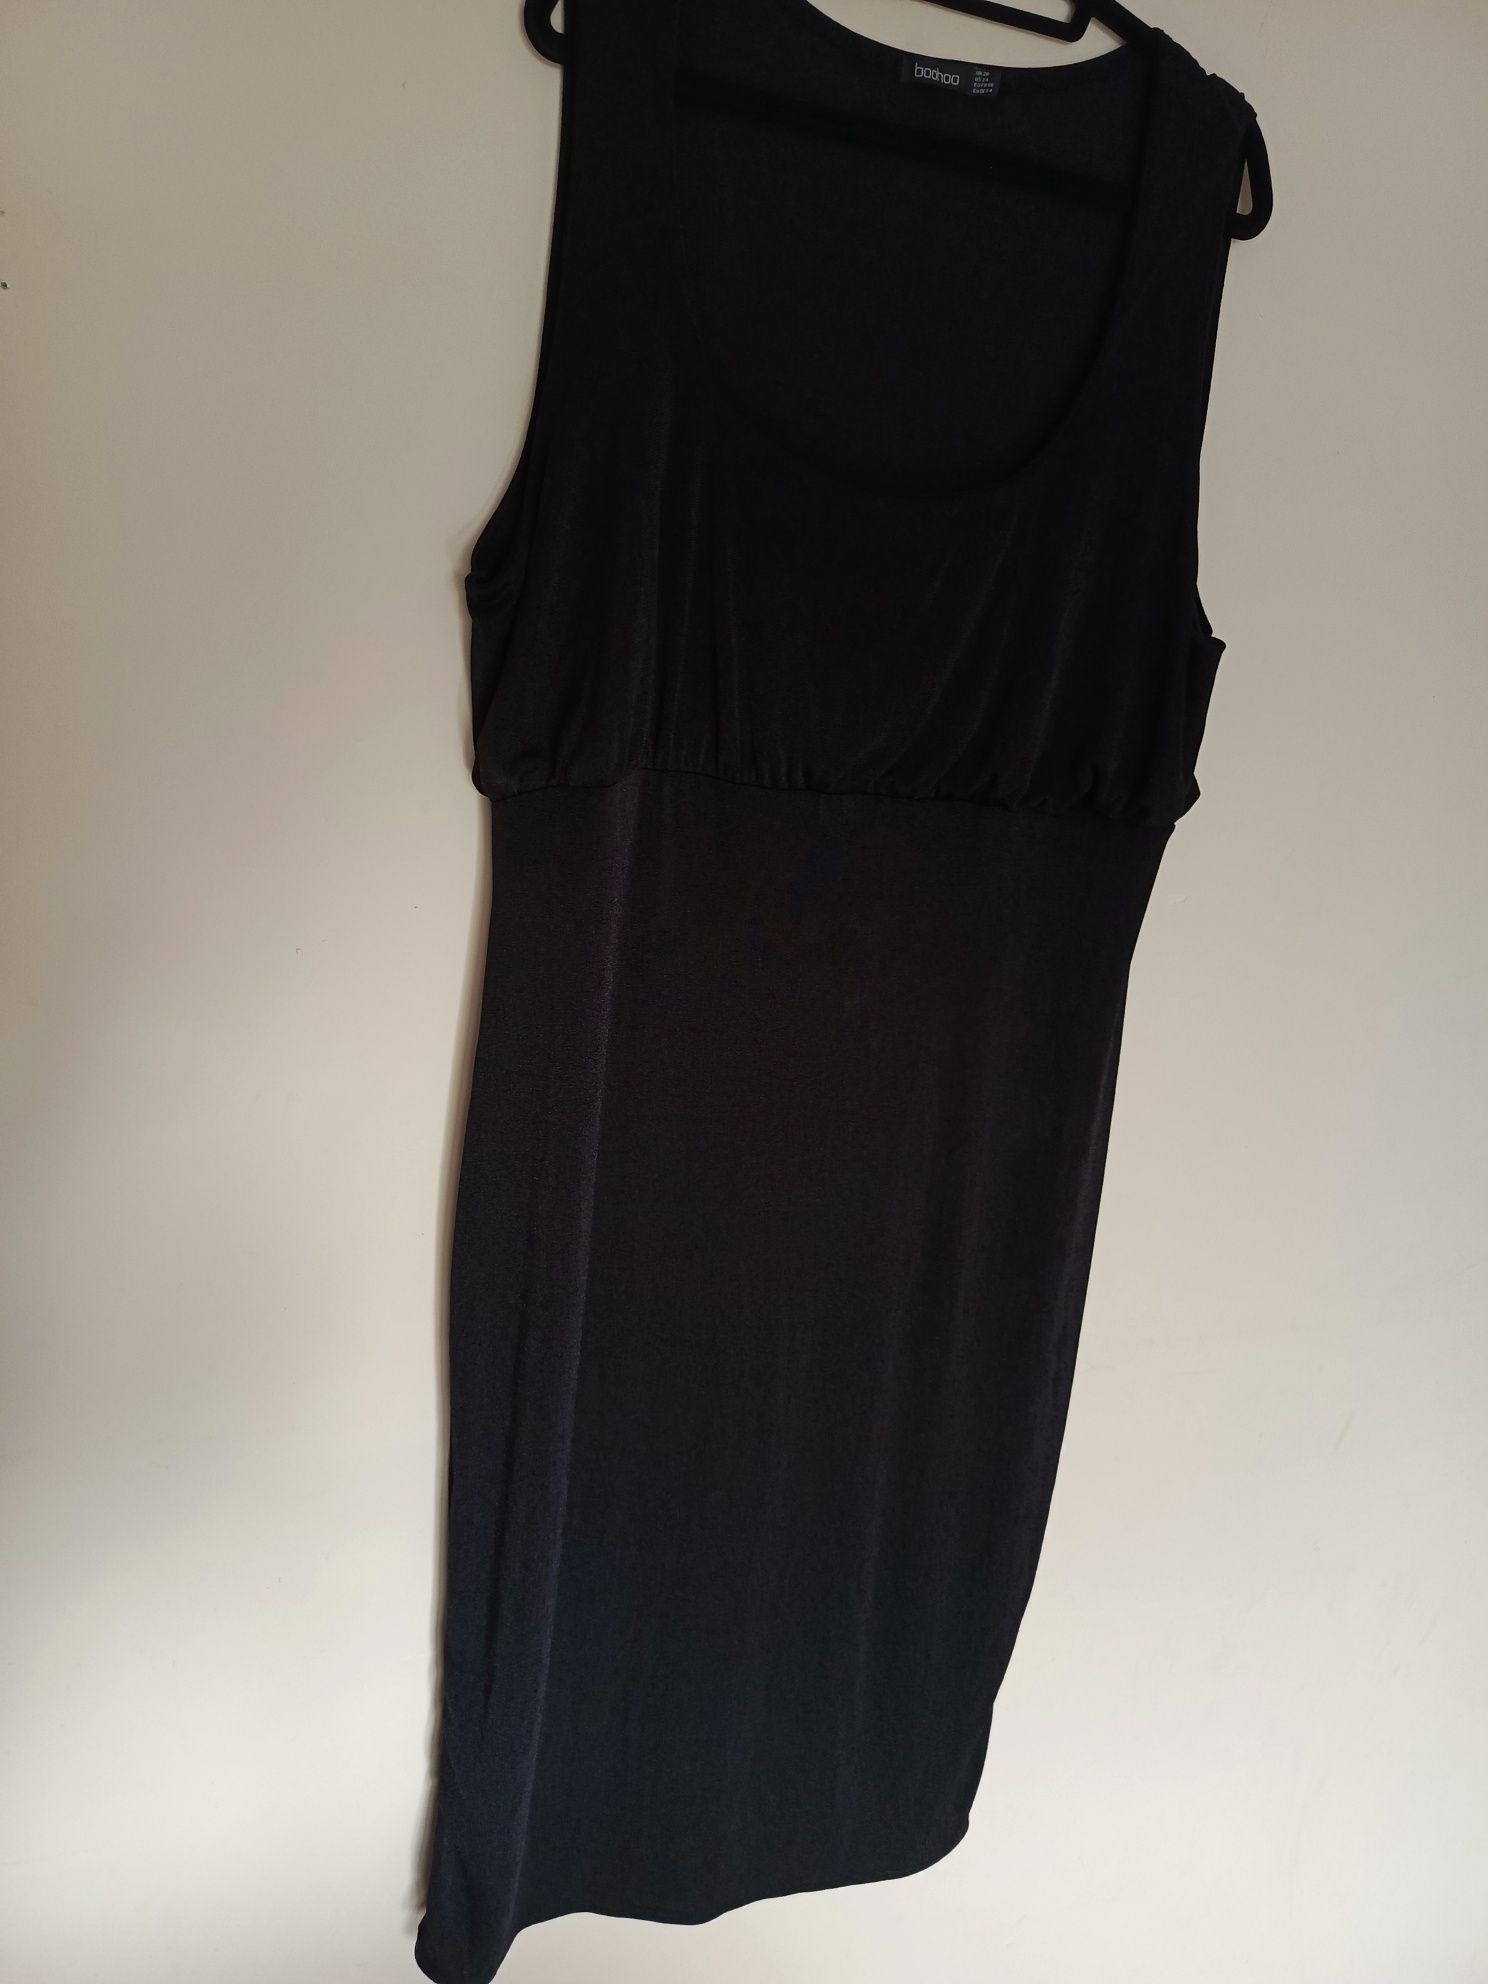 Czarna sukienka elastyczna wygodna r.48-50-52